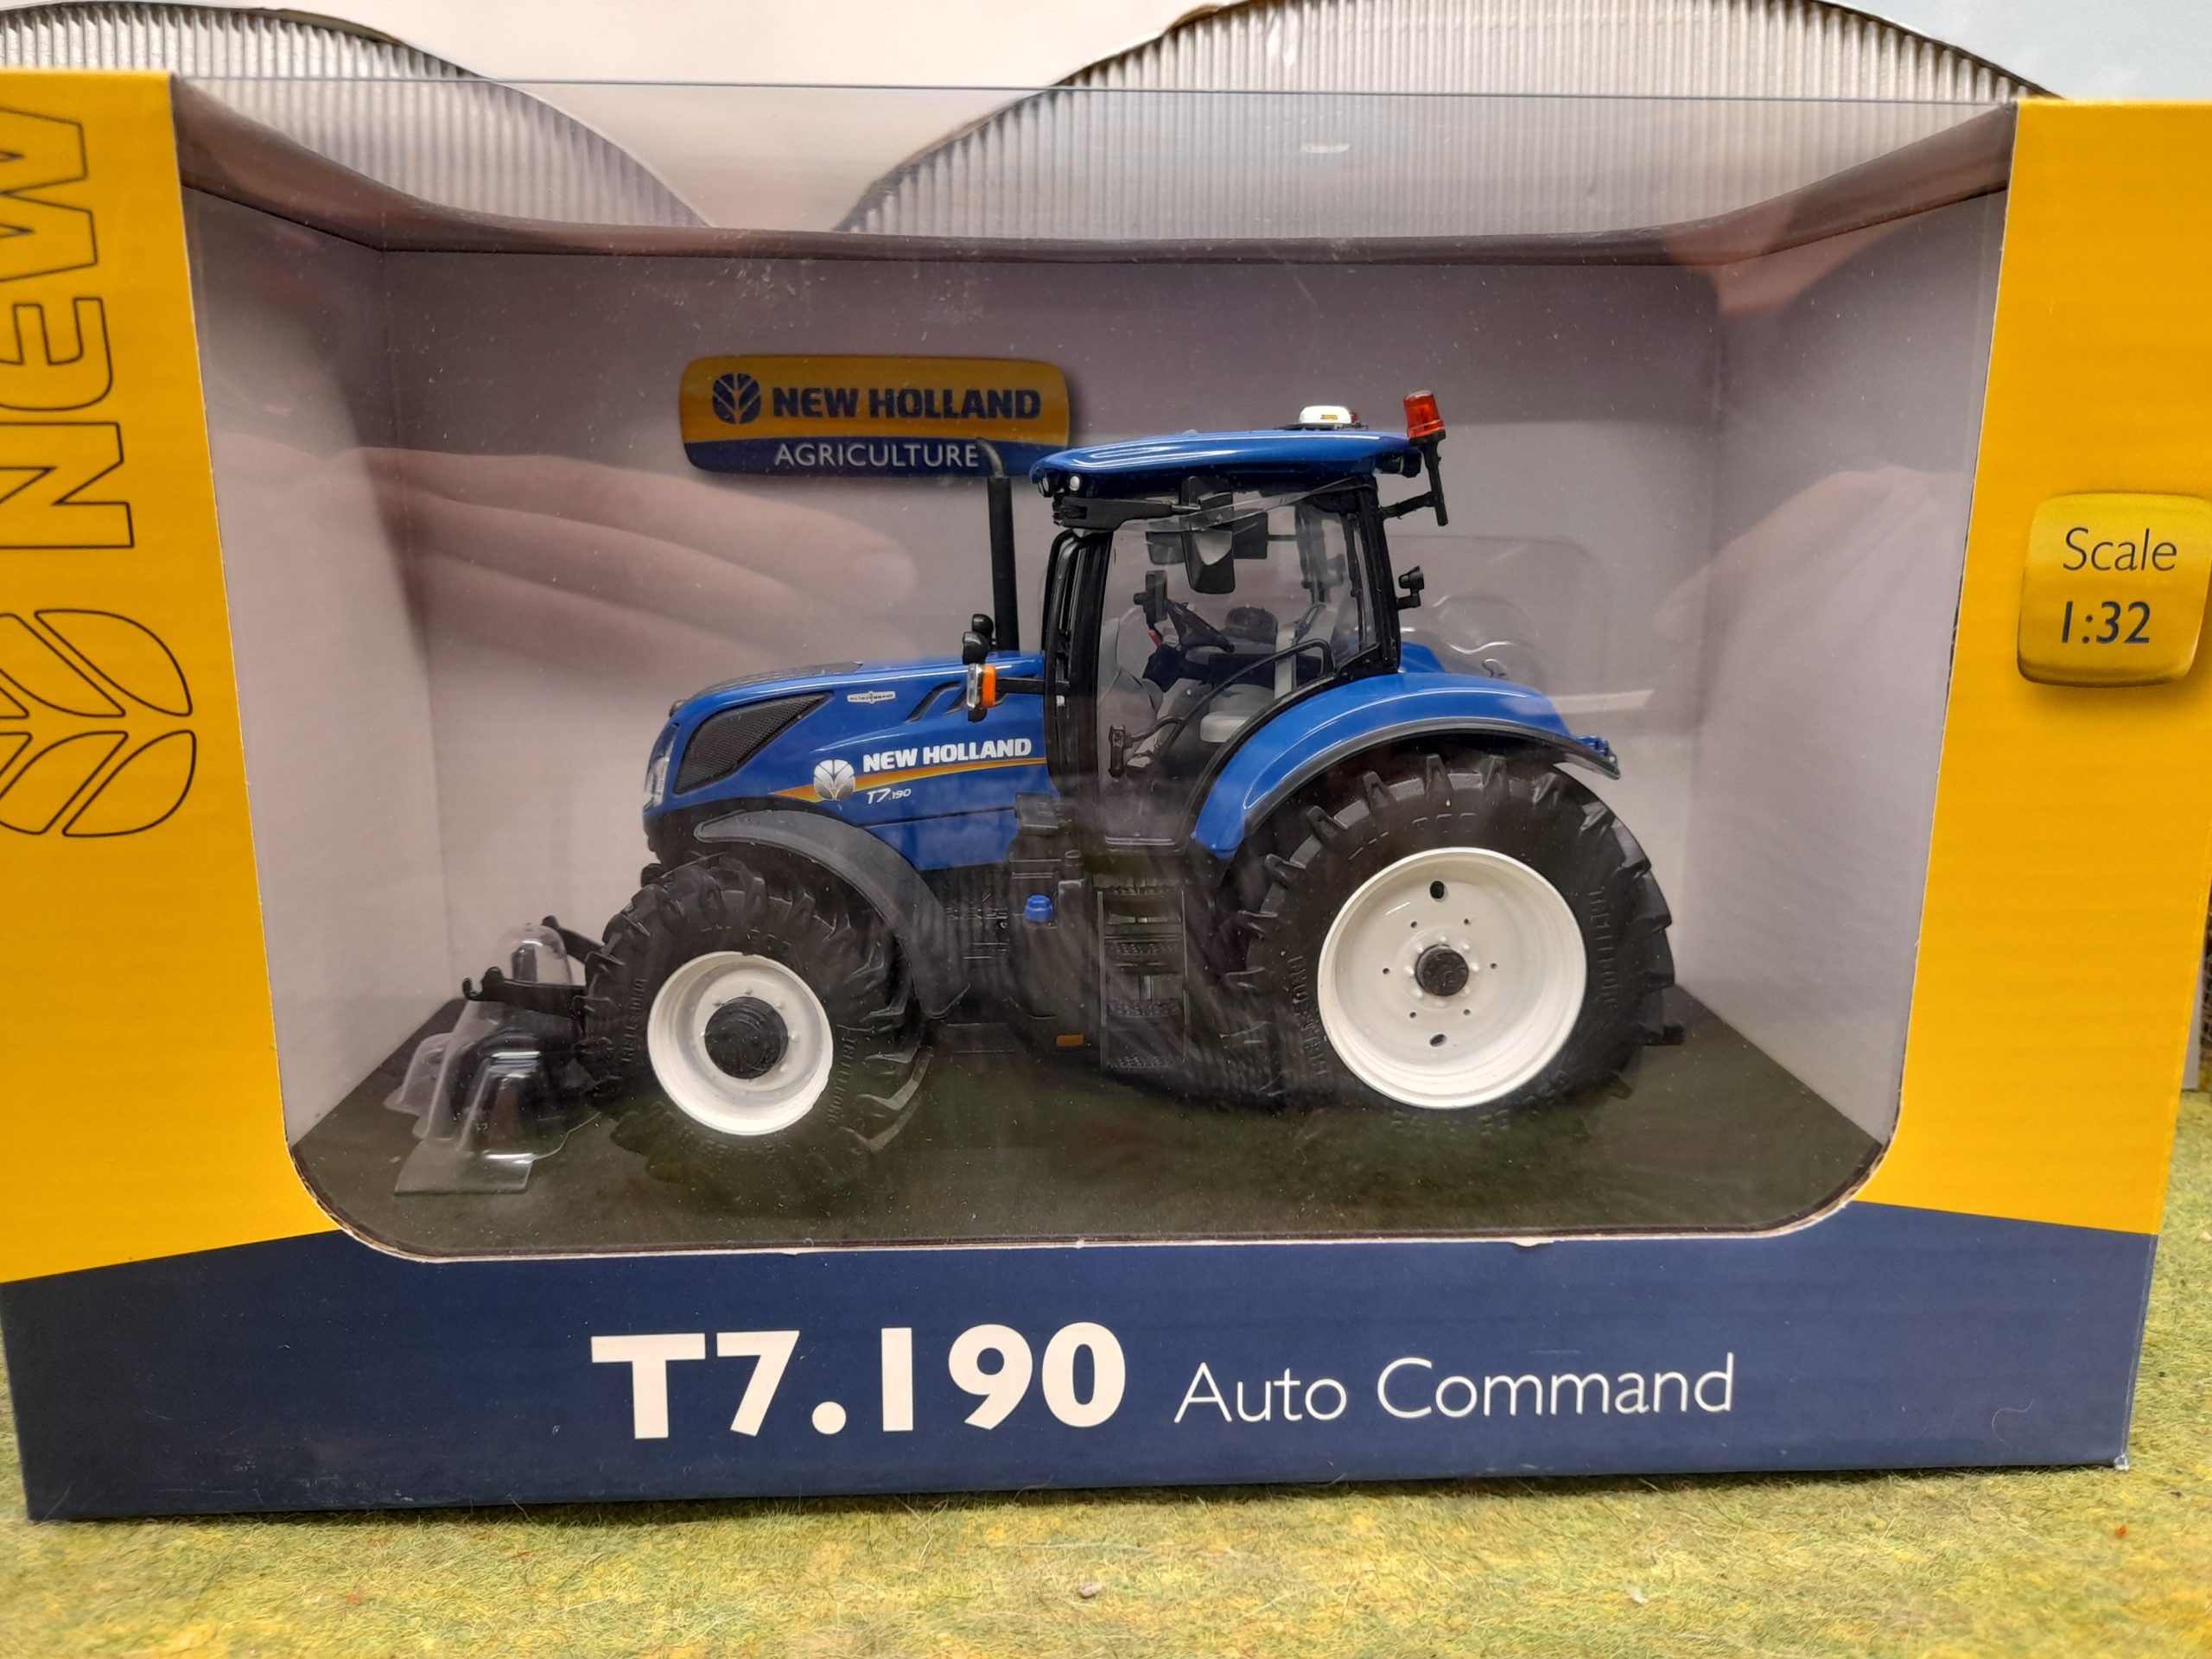 Tracteur New Holland T7.190 Auto Command à l'échelle 1:32